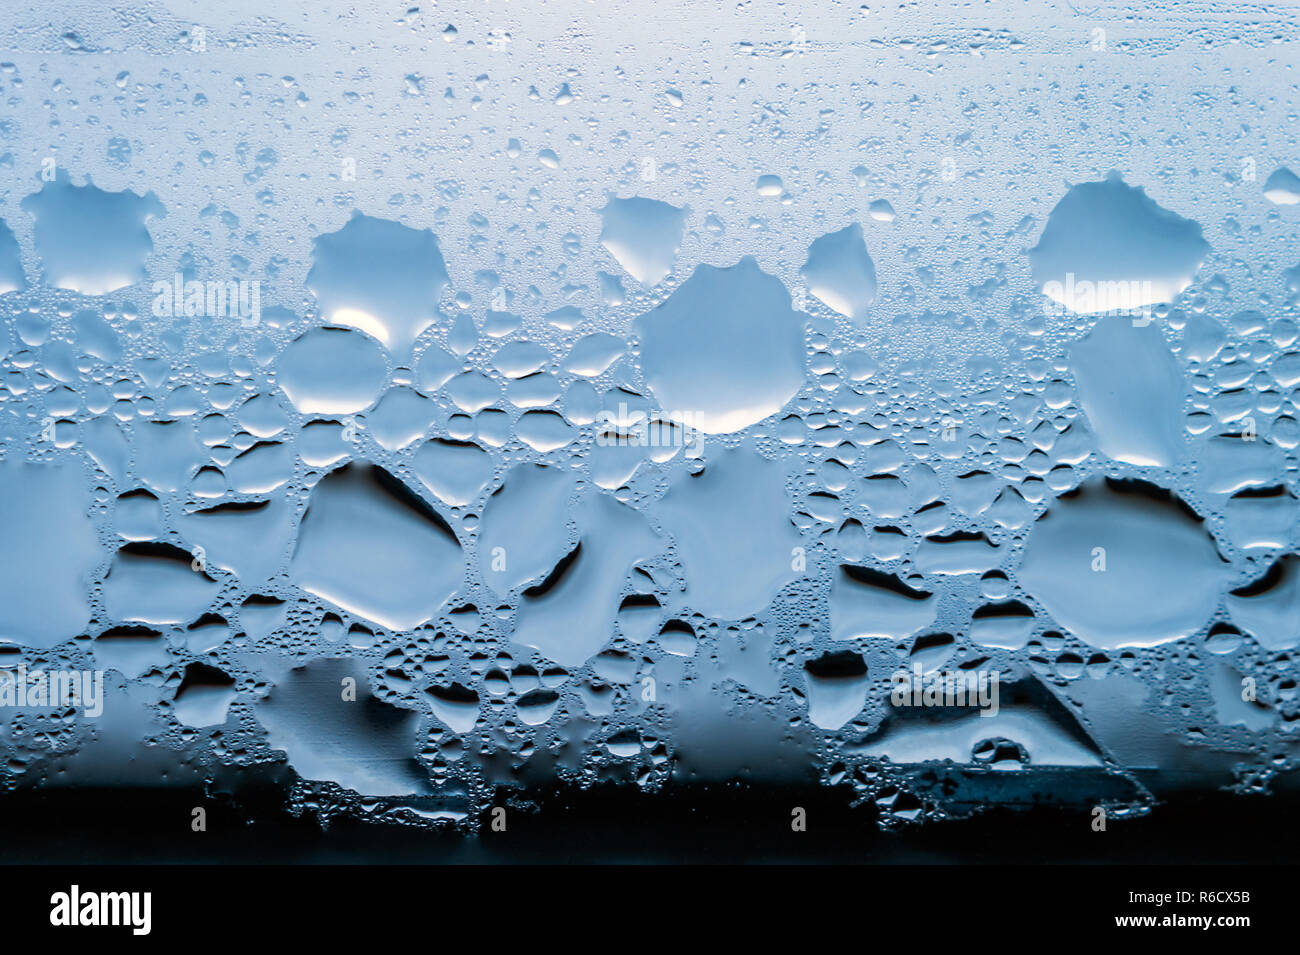 La condensation, vapeur, pluie, gouttes d'eau de différentes tailles sur une surface en verre. Banque D'Images